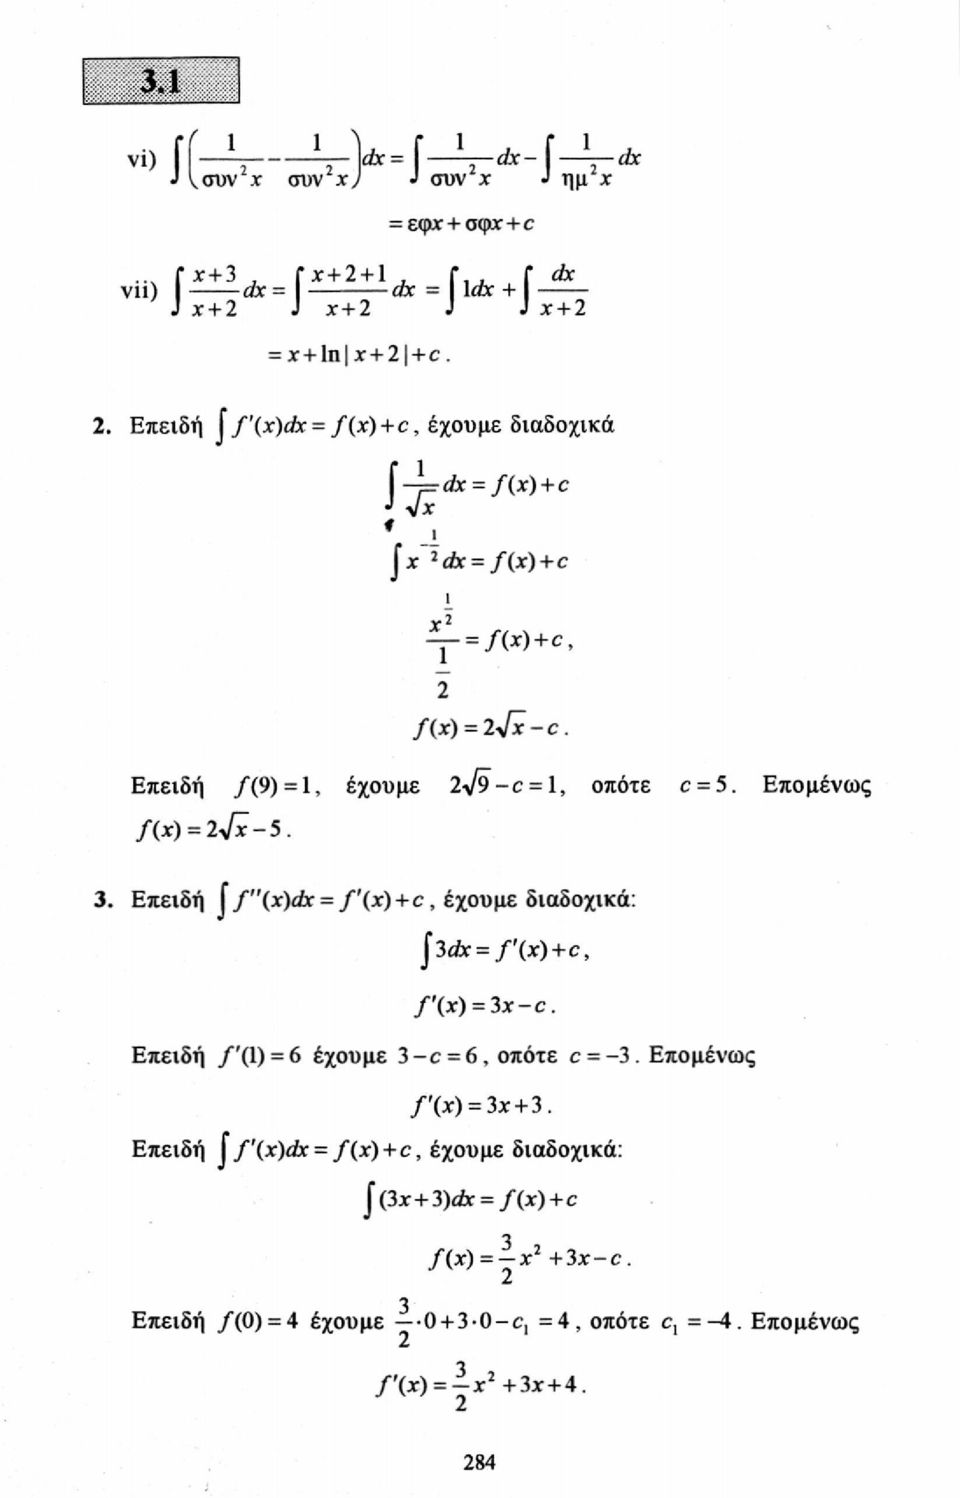 Επομένως /(*) = l Jx-5. 3. Επειδή J f"(x)dx = f'(x) + c, έχουμε διαδοχικά: J* 3c/xr = /'(x) + c, f\x) = 3x-c. Επειδή /'(1) = 6 έχουμε 3-c = 6, οπότε c = -3.